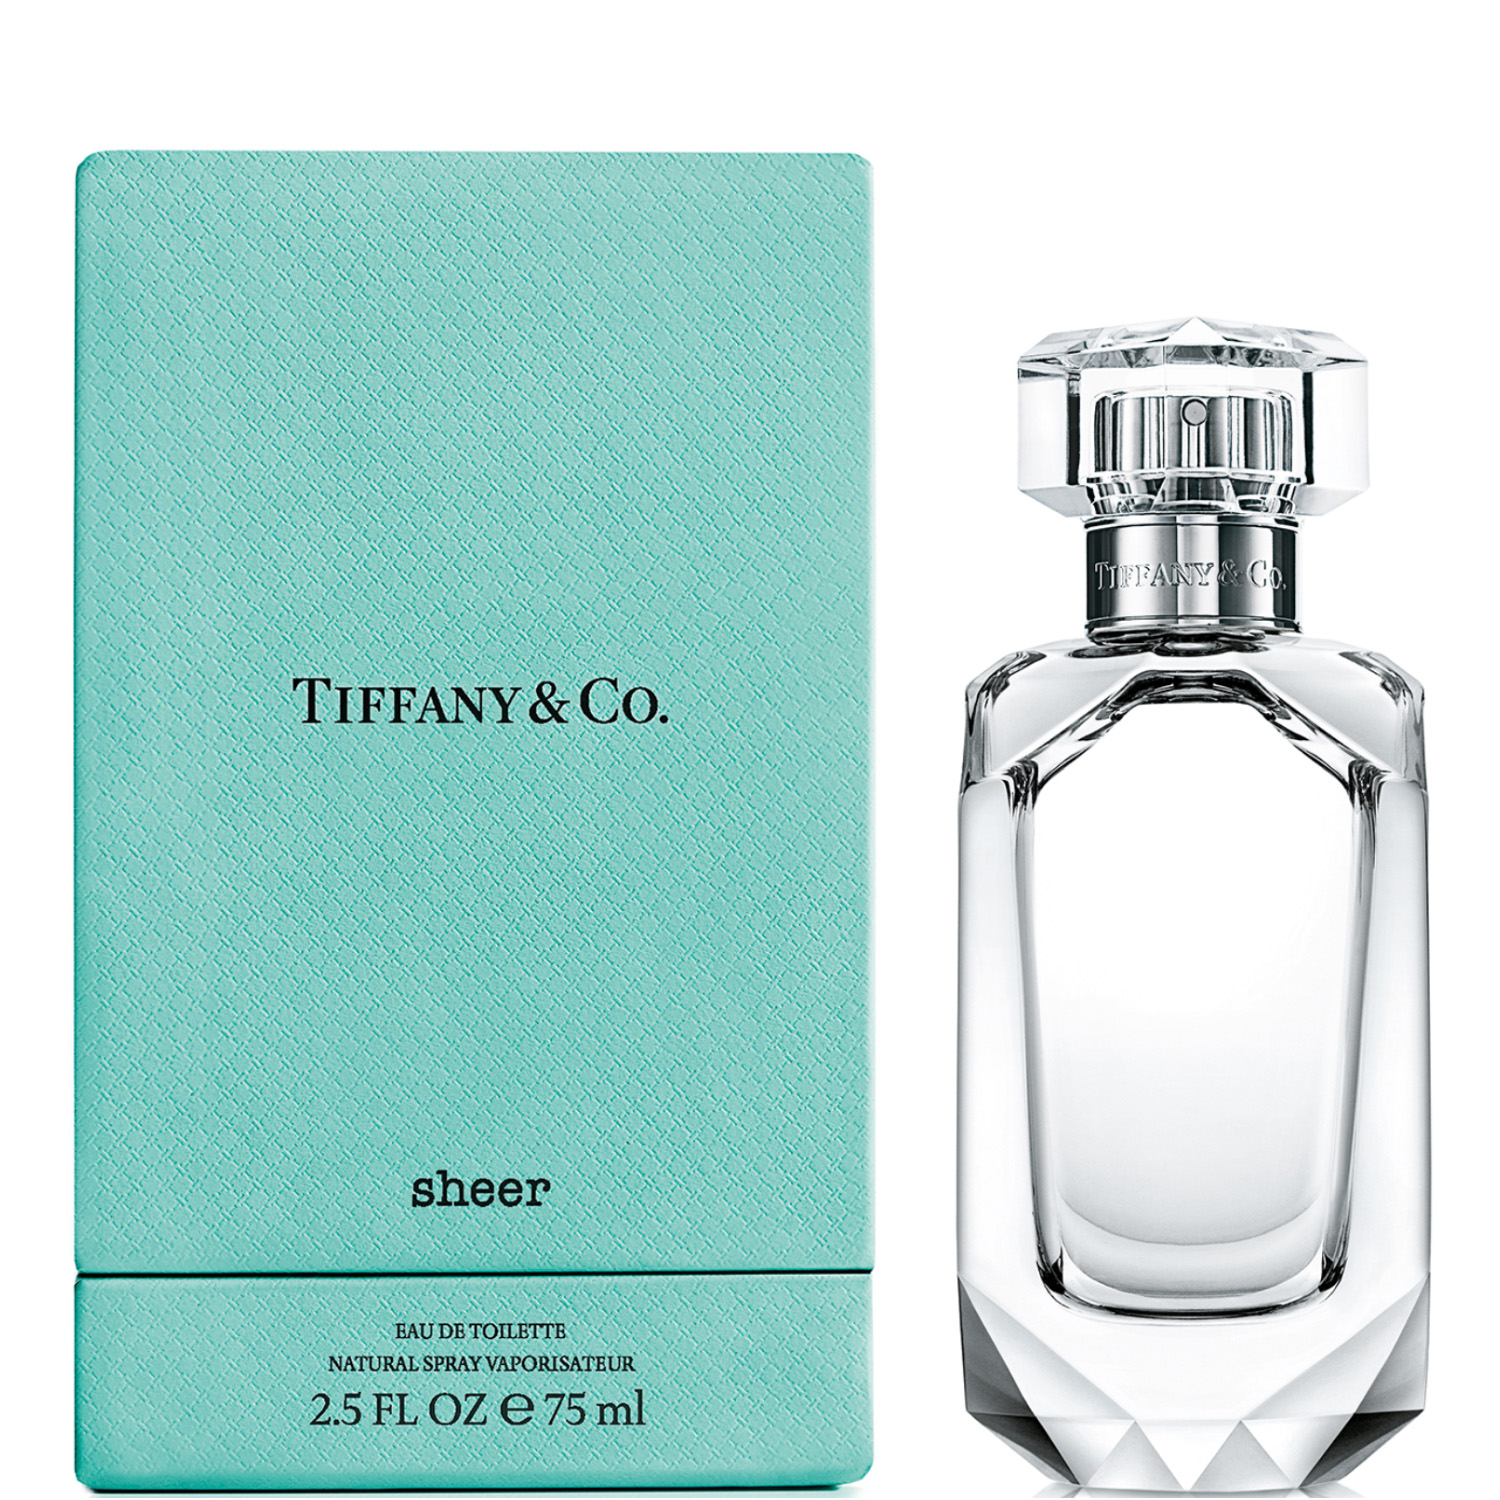 Tiffany & Co. Sheer Eau de Toilette 75ml